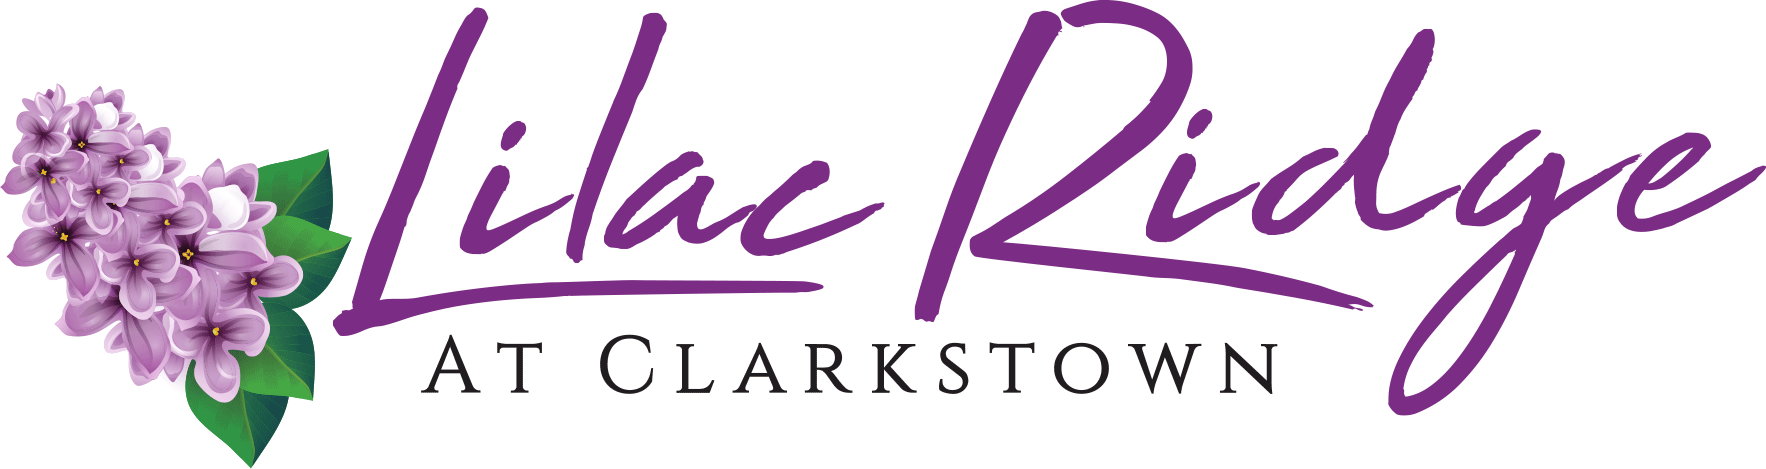 Lilac Ridge at Clarkstown logo